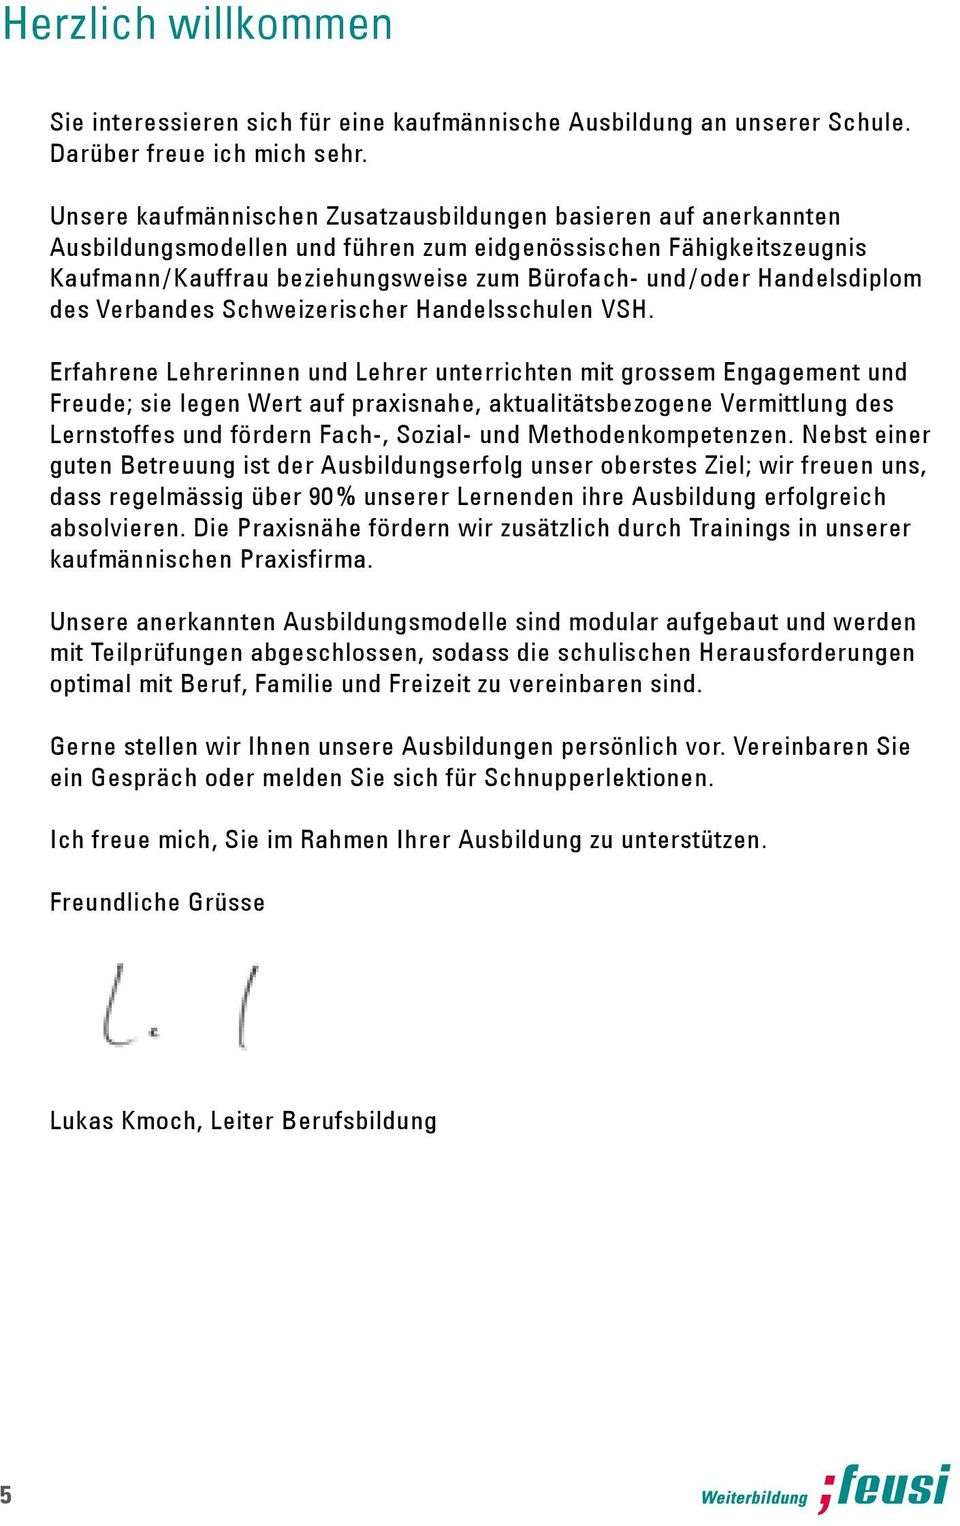 Handels diplom des Verbandes Schweizerischer Handelsschulen VSH.